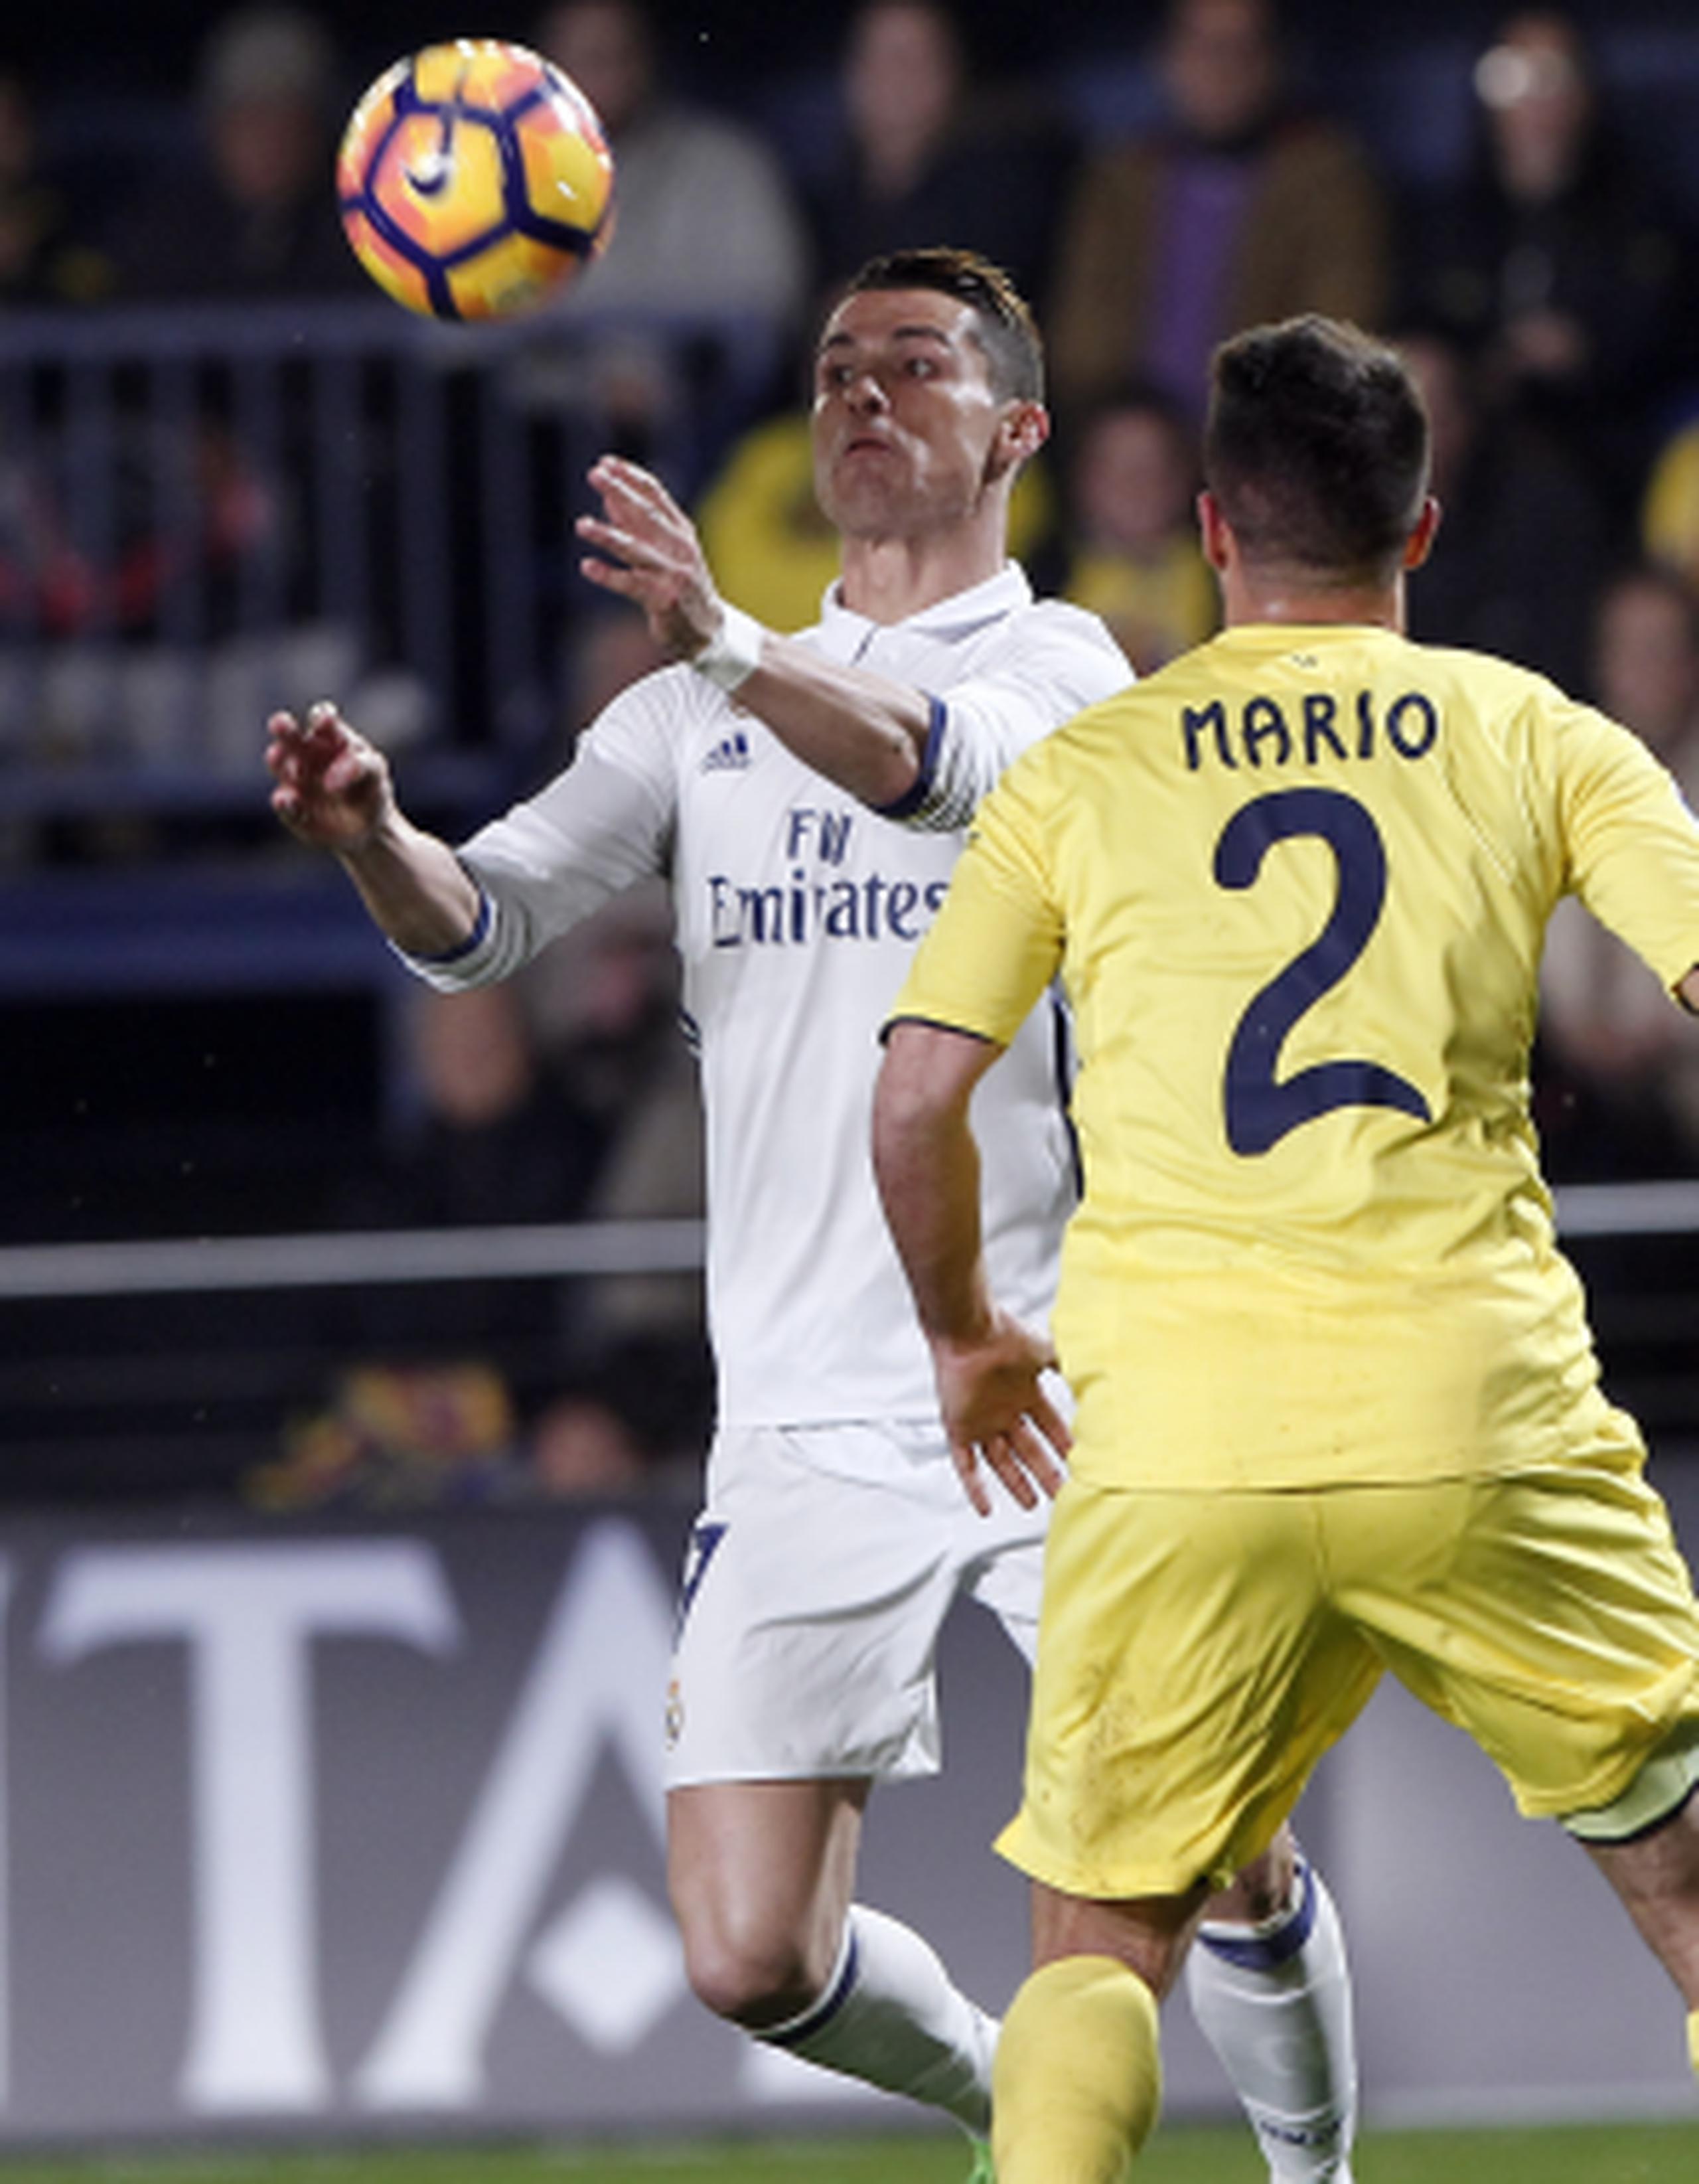 Cristiano Ronaldo trata de controlar el balón ante la defensa de Mario Gaspar, de Villareal, en la victoria de Real Madrid en la jornada de hoy de la Liga Española. (AP/Jose Miguel Fernandez)